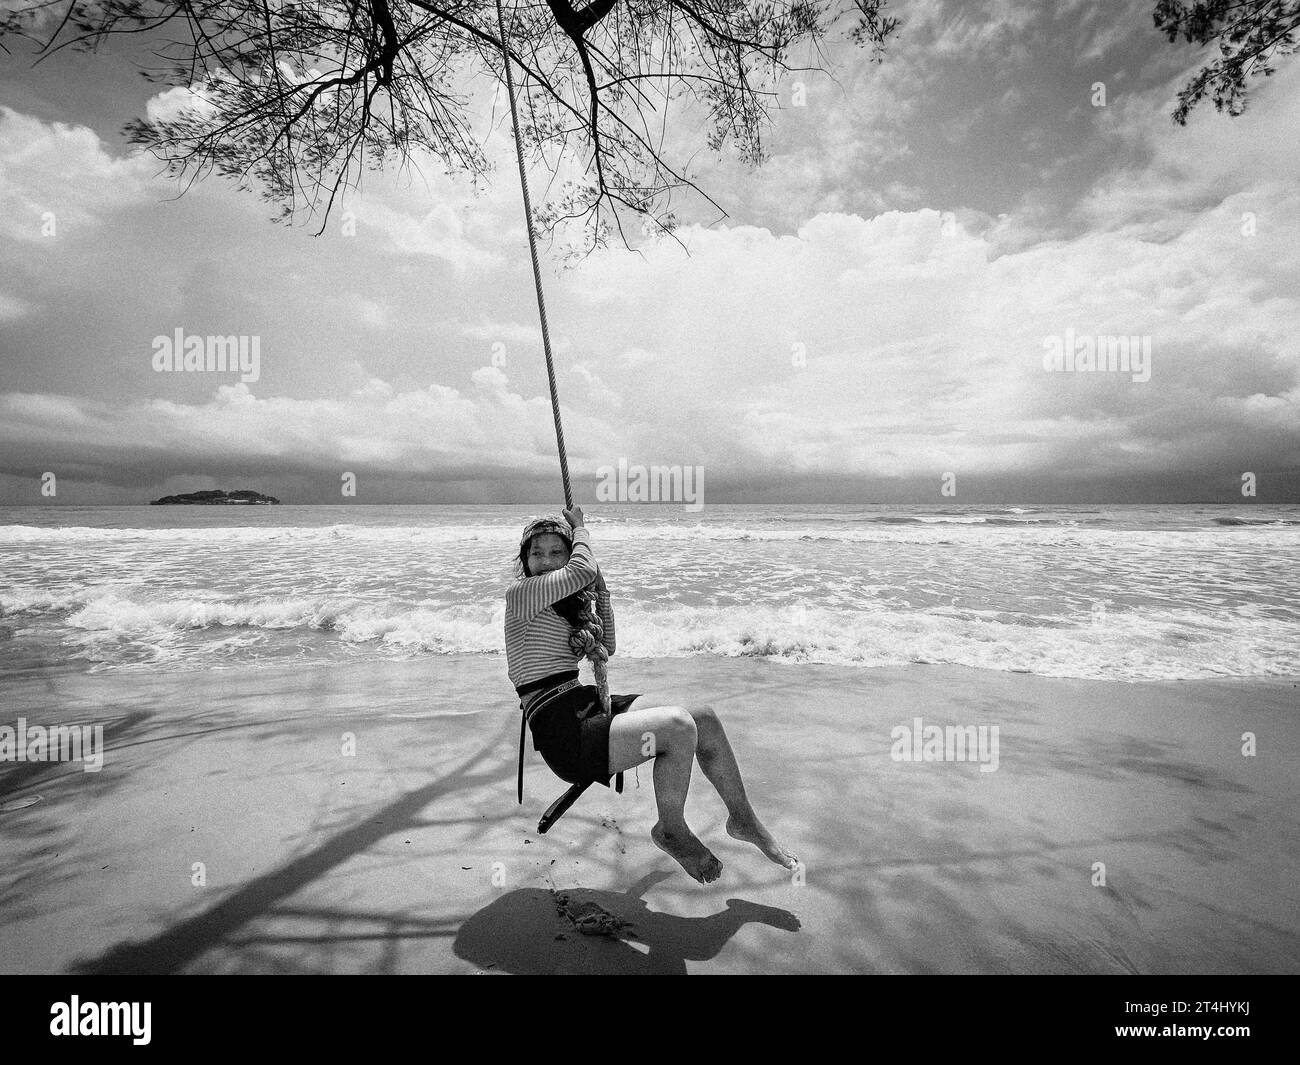 Cambogia, Sihanoukville, tempo libero sulla spiaggia Foto Stock